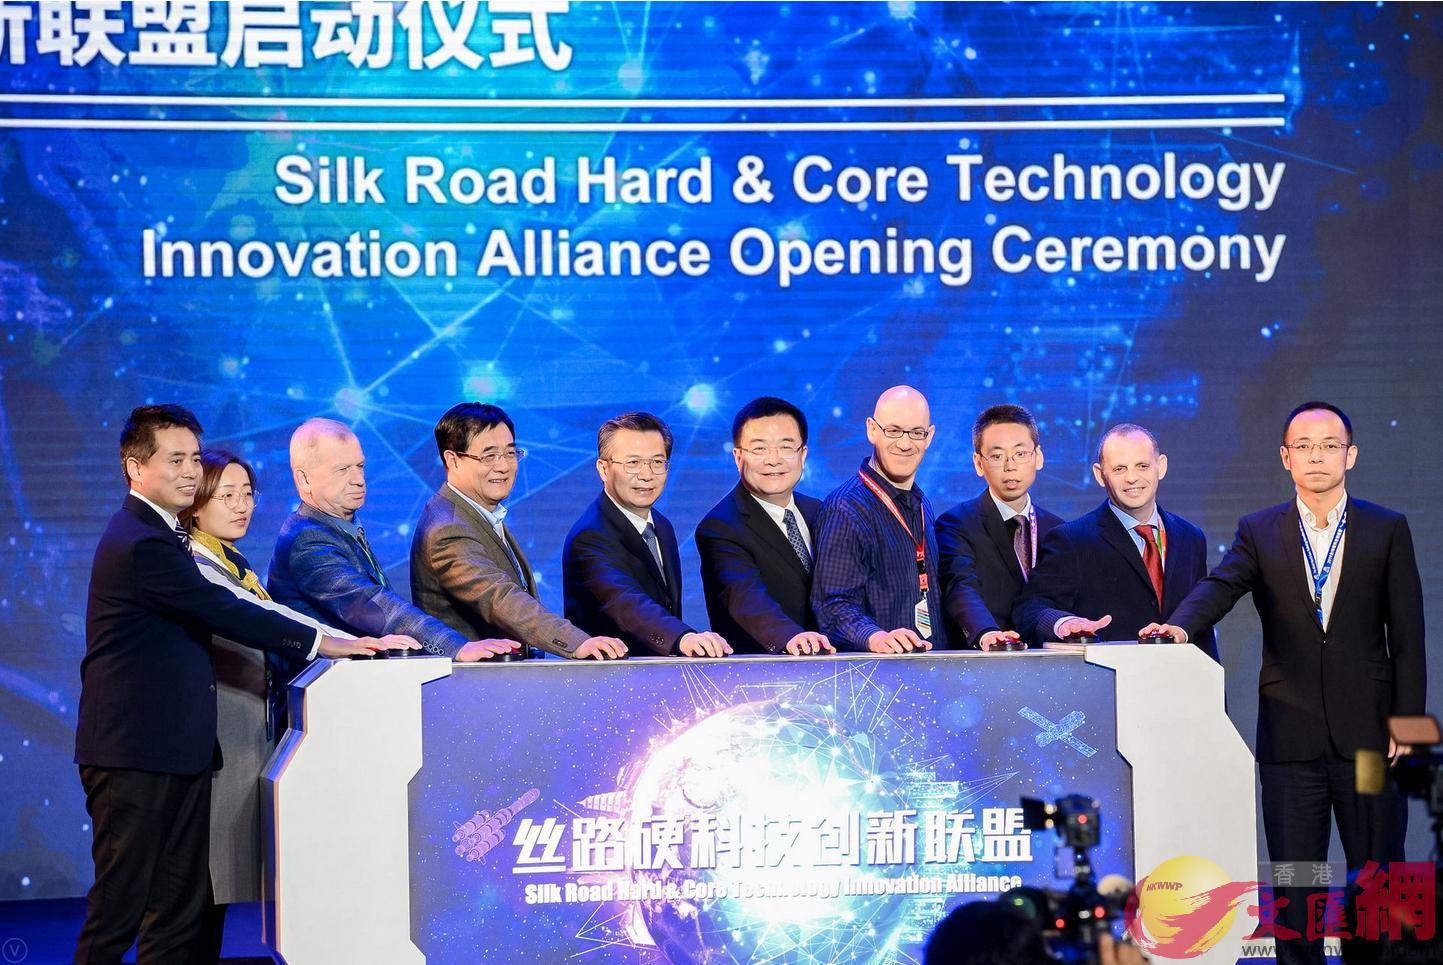 日前在西安舉行的全球硬科技大會上u絲路硬科技創新聯盟正式成立vC記者李陽波 攝